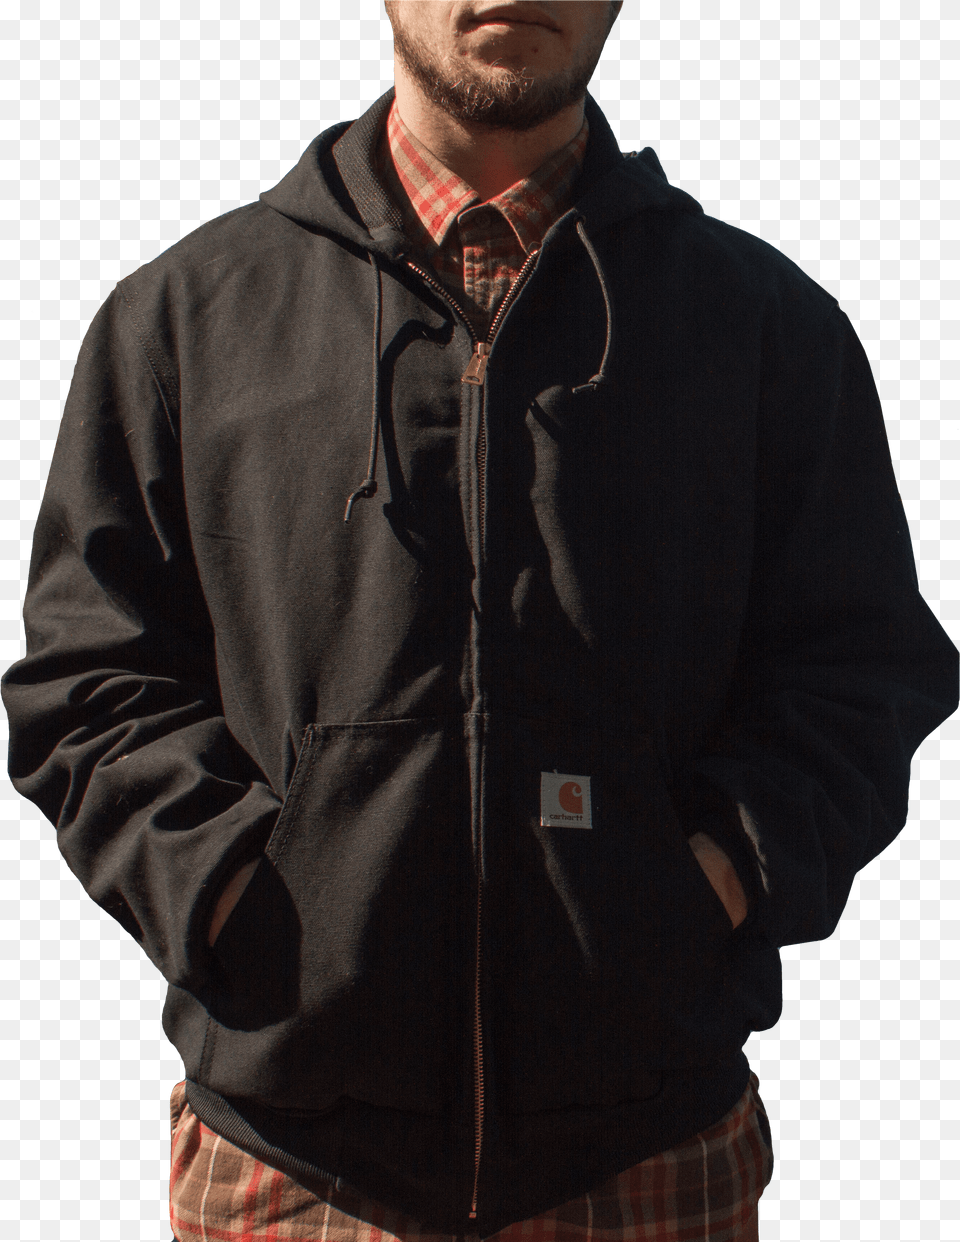 Black Duck Jacket Zipper, Clothing, Coat, Fleece, Hoodie Free Transparent Png